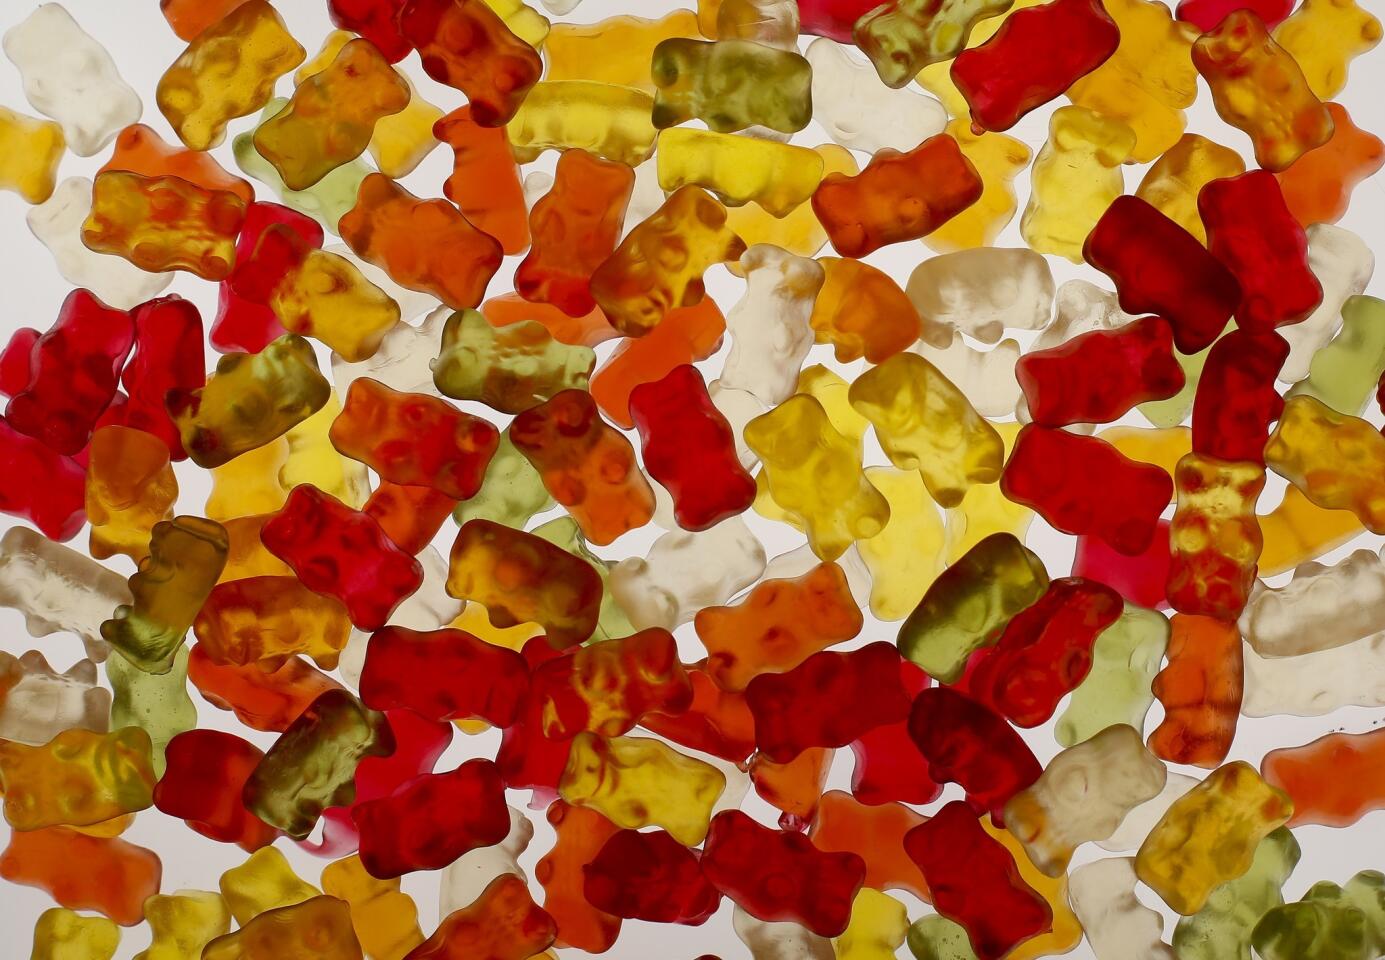 Worst: Gummy Bears